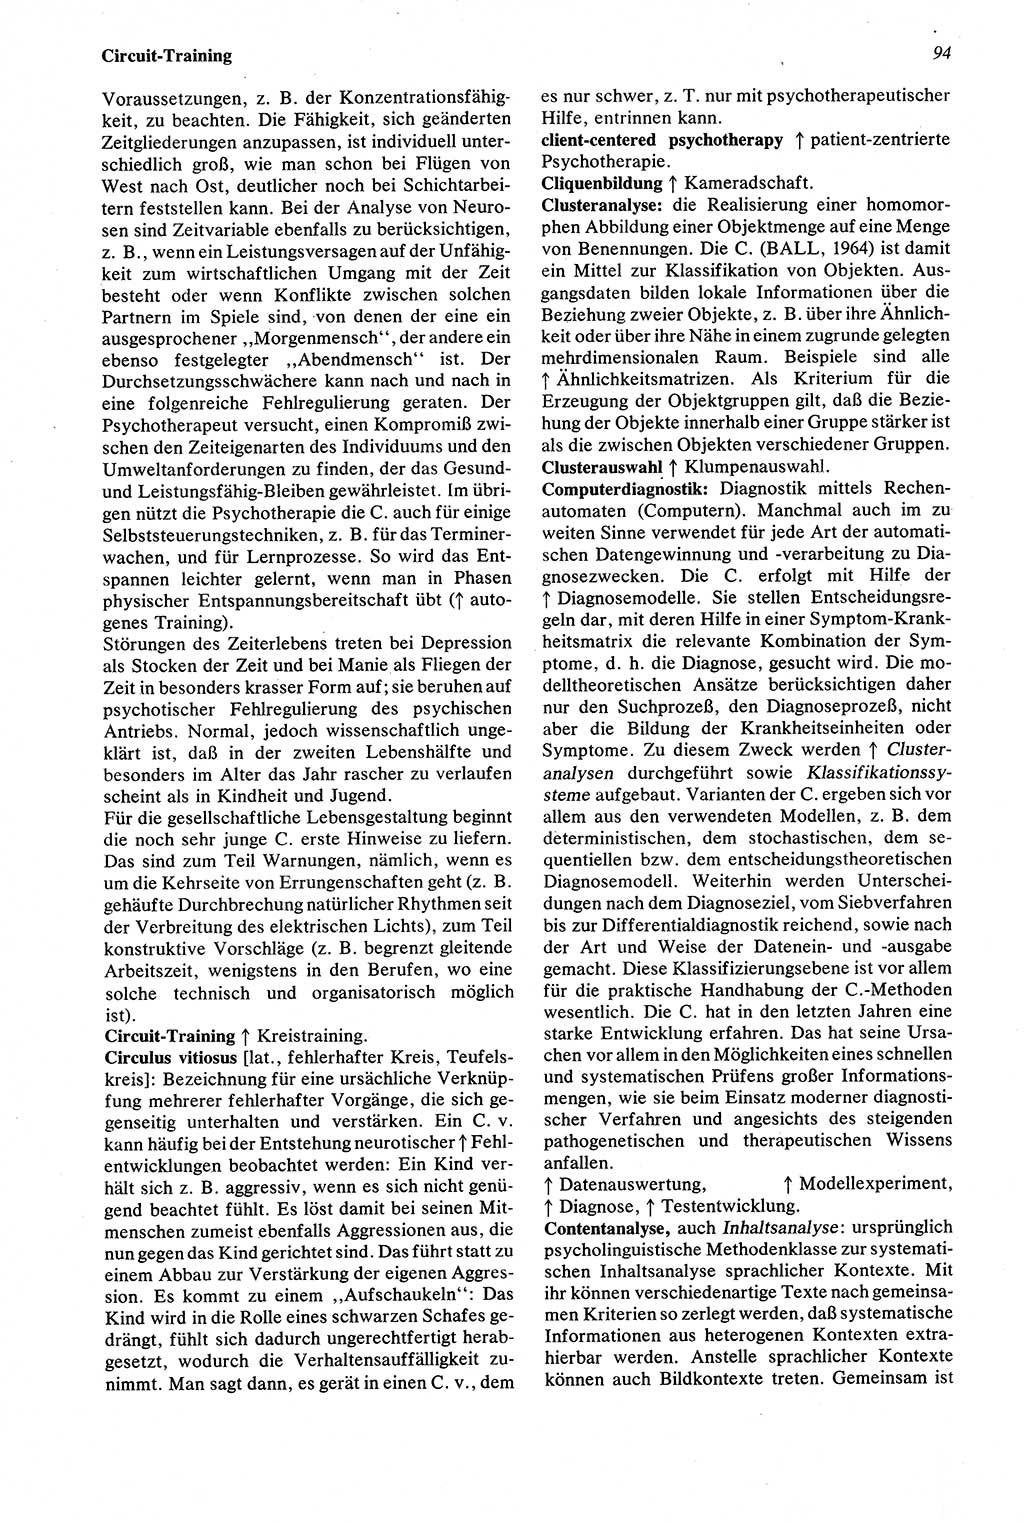 Wörterbuch der Psychologie [Deutsche Demokratische Republik (DDR)] 1976, Seite 94 (Wb. Psych. DDR 1976, S. 94)